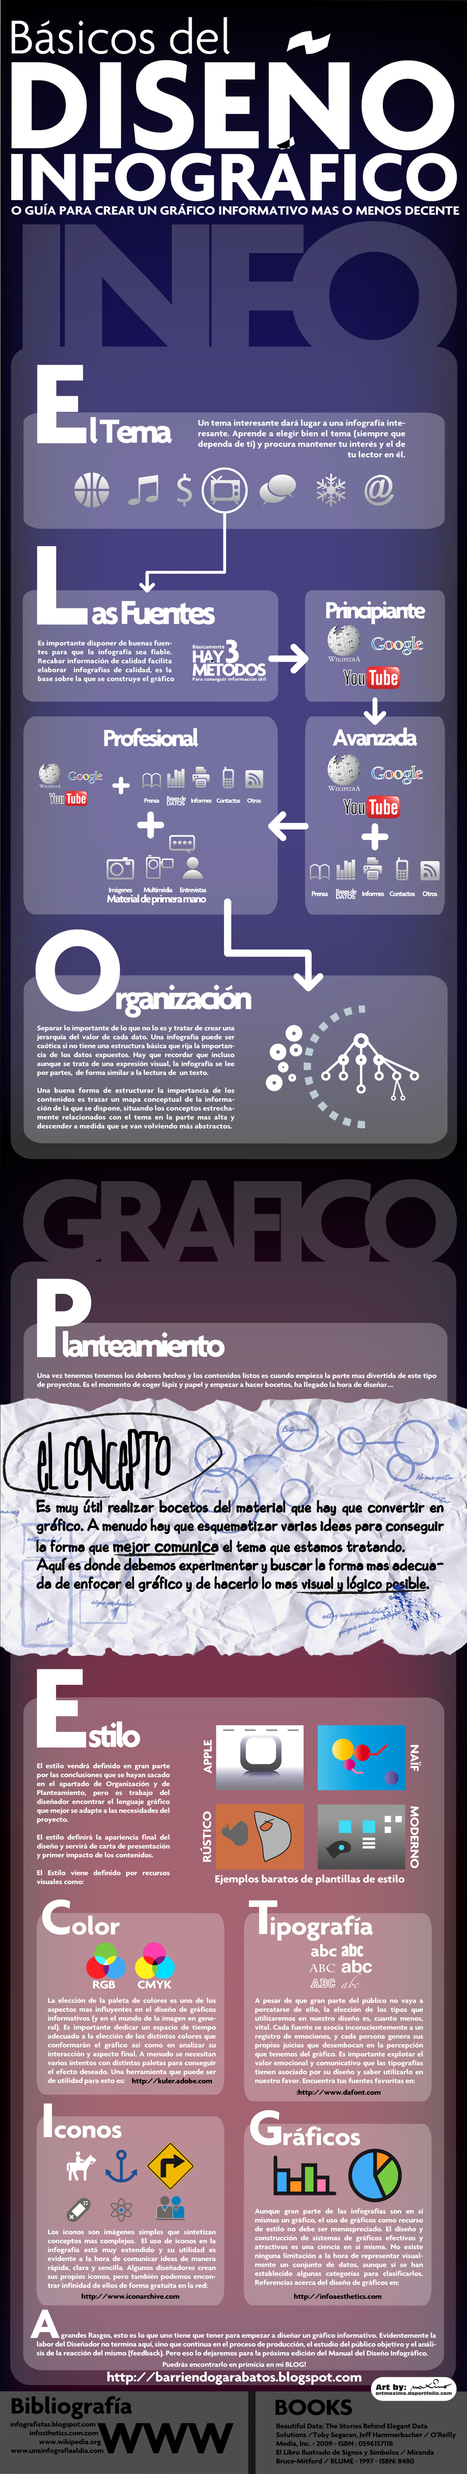 Cómo crear una infografía: guía de diseño│@MaximoBCN | E-Learning-Inclusivo (Mashup) | Scoop.it